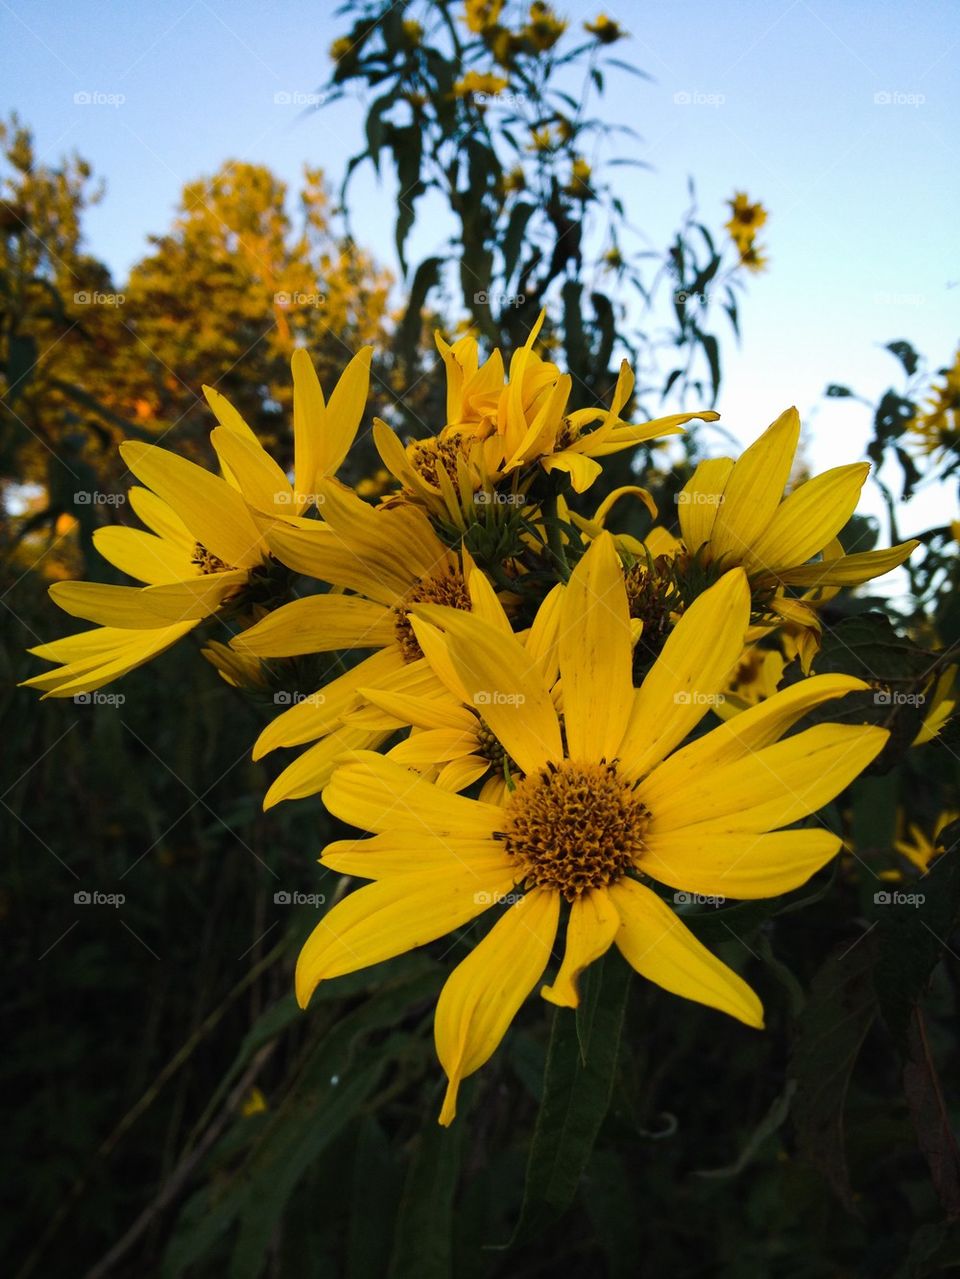 Sunflower Look-alike